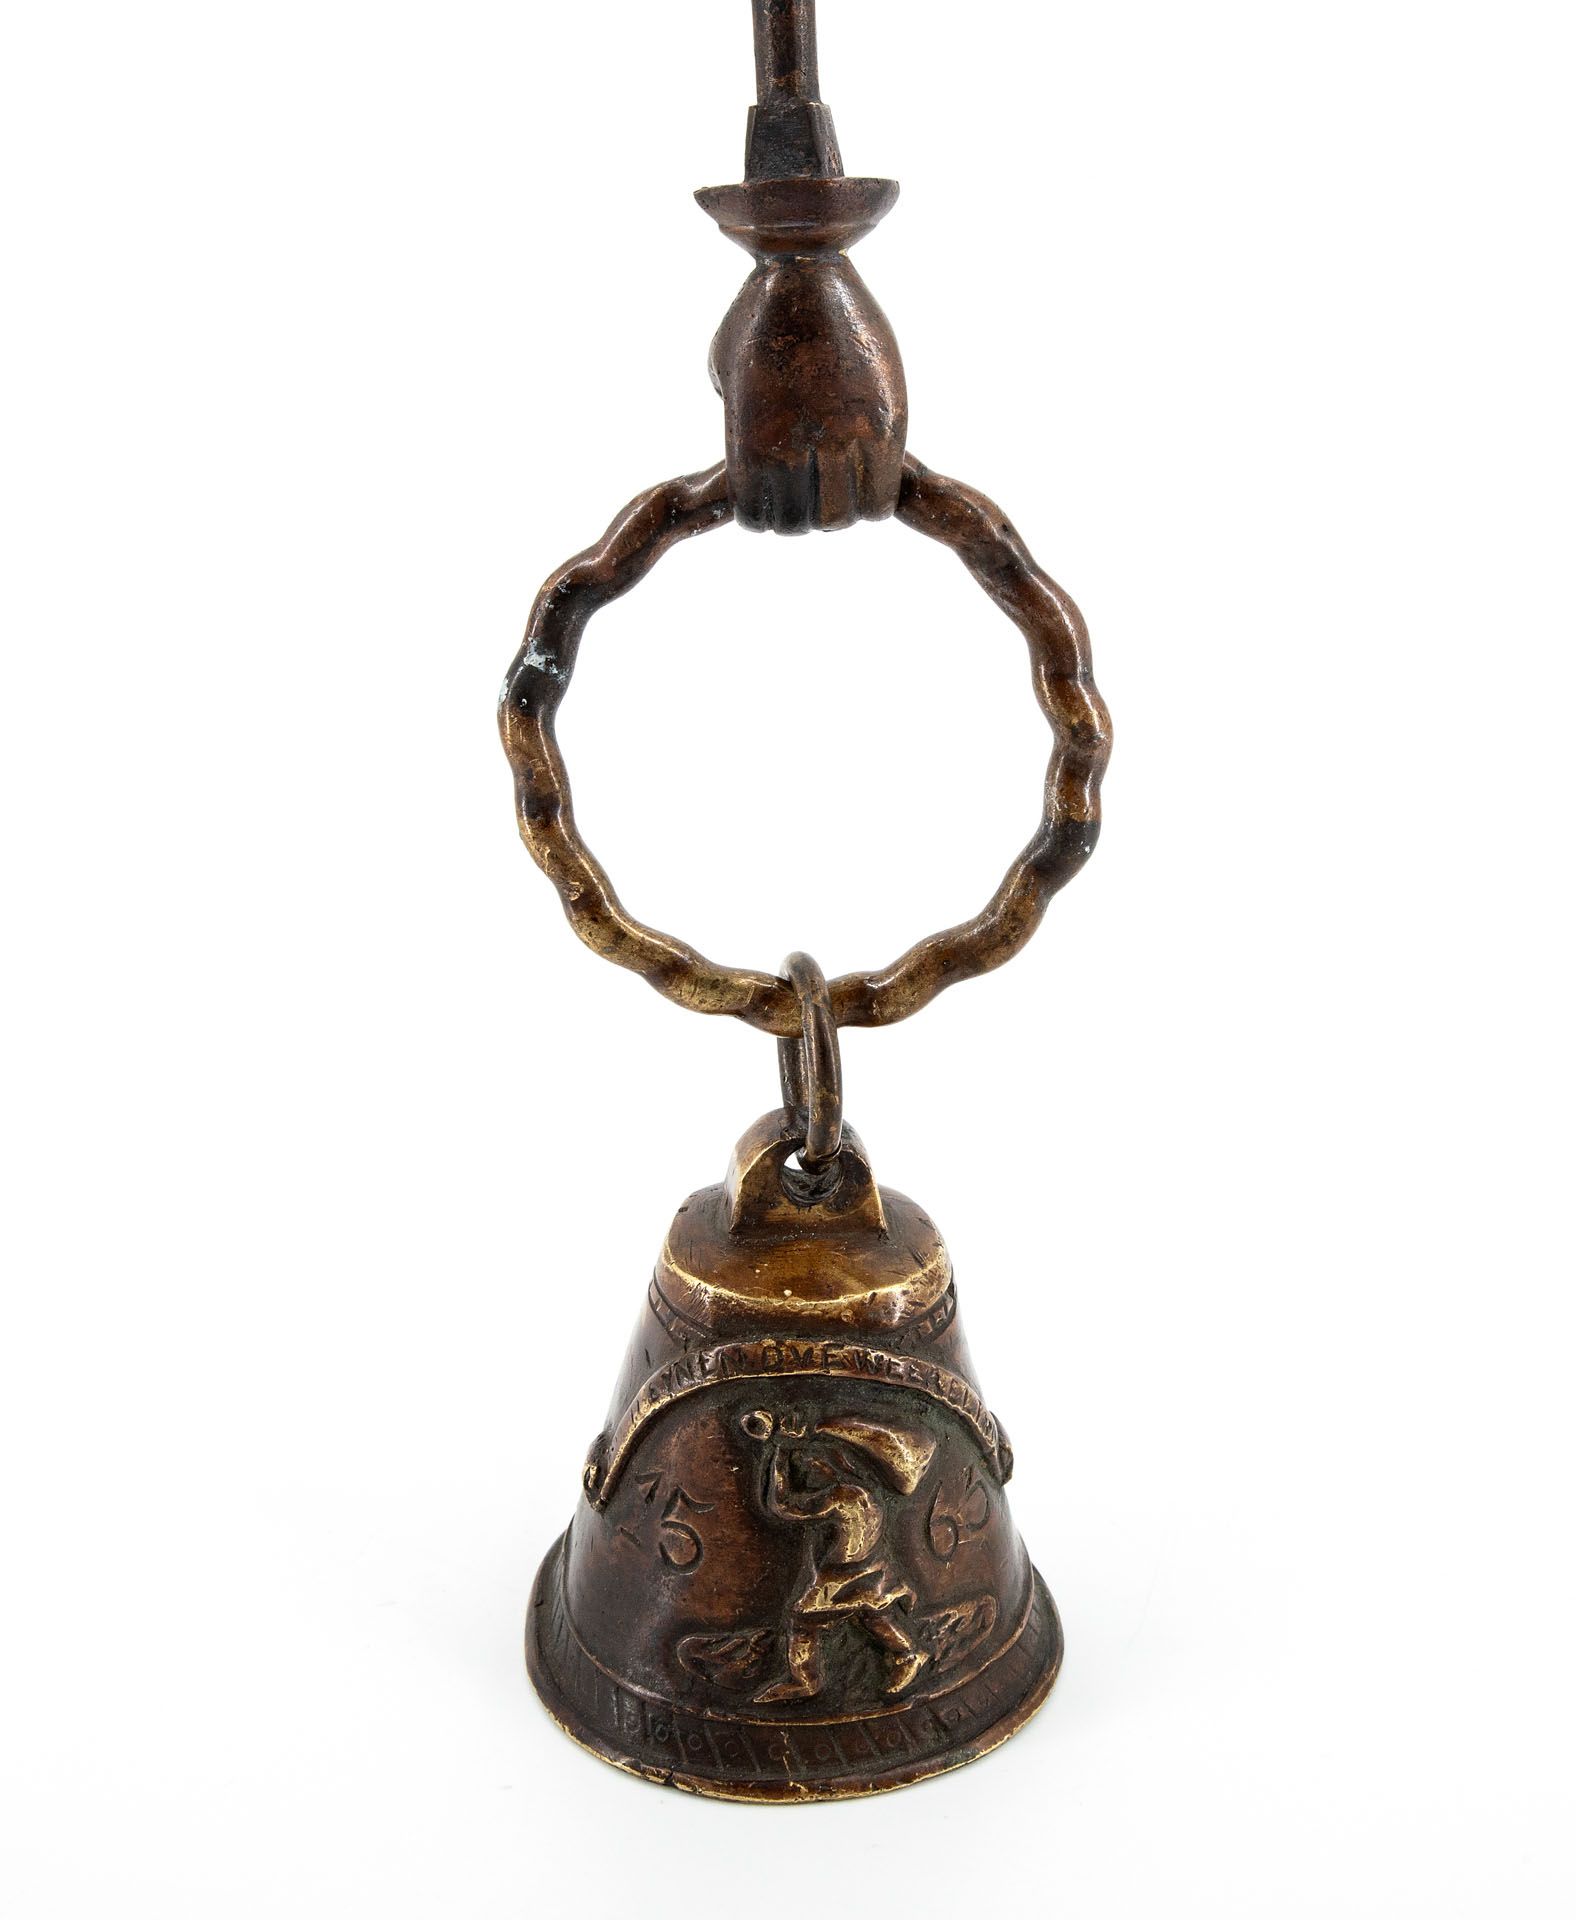 A Rare Renaissance Bronze Hand Bell, Germany, 1563